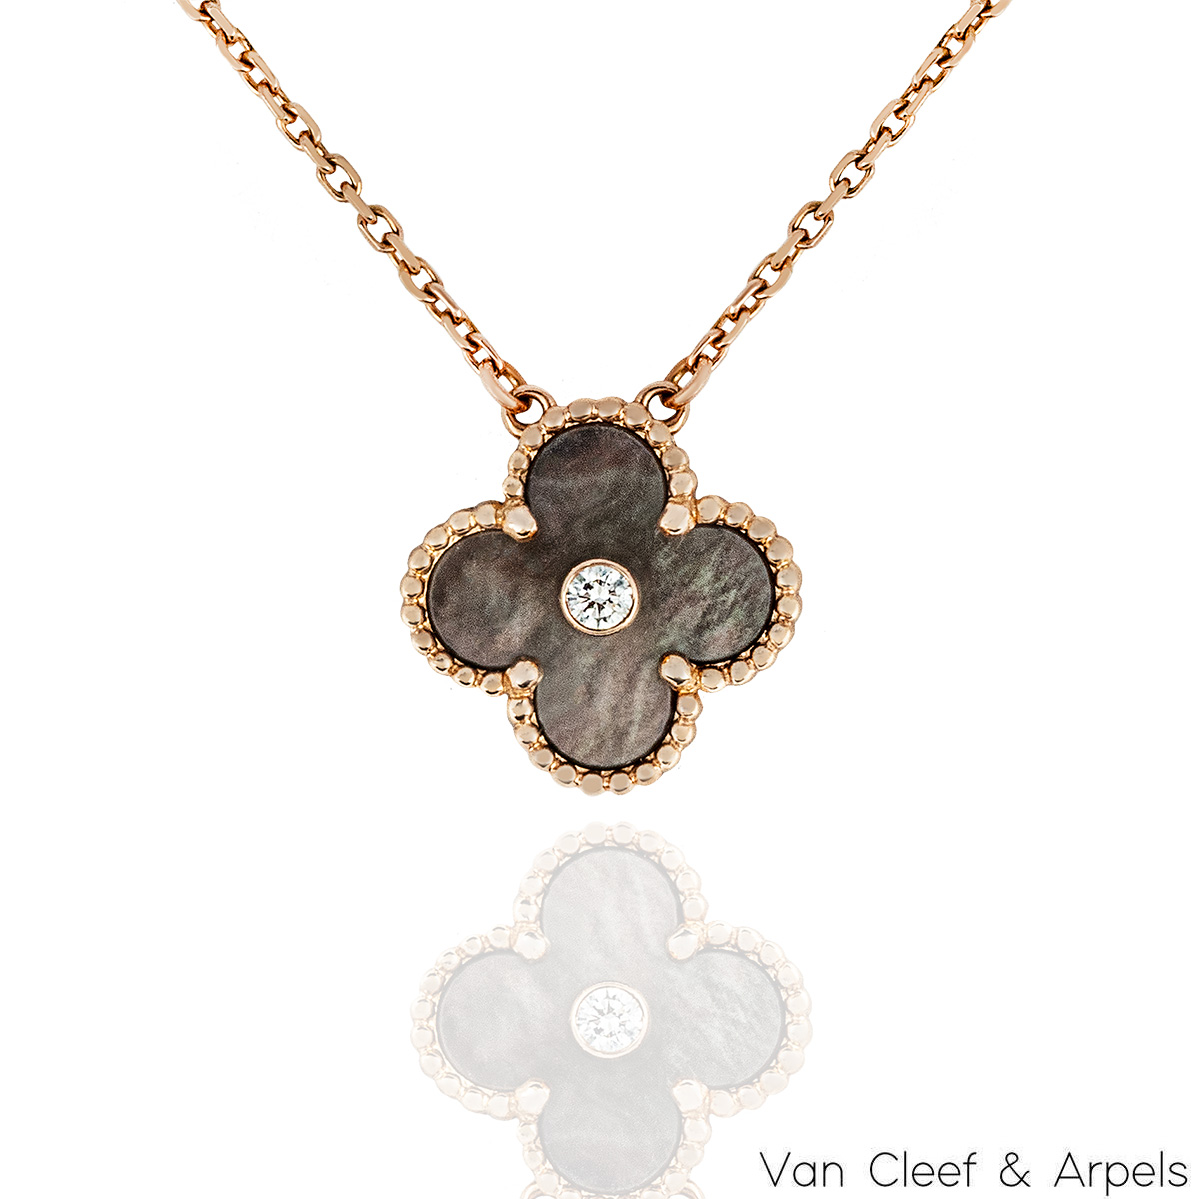 Van Cleef & Arpels' Grey Mother-of-pearl Vintage Alhambra Pendant